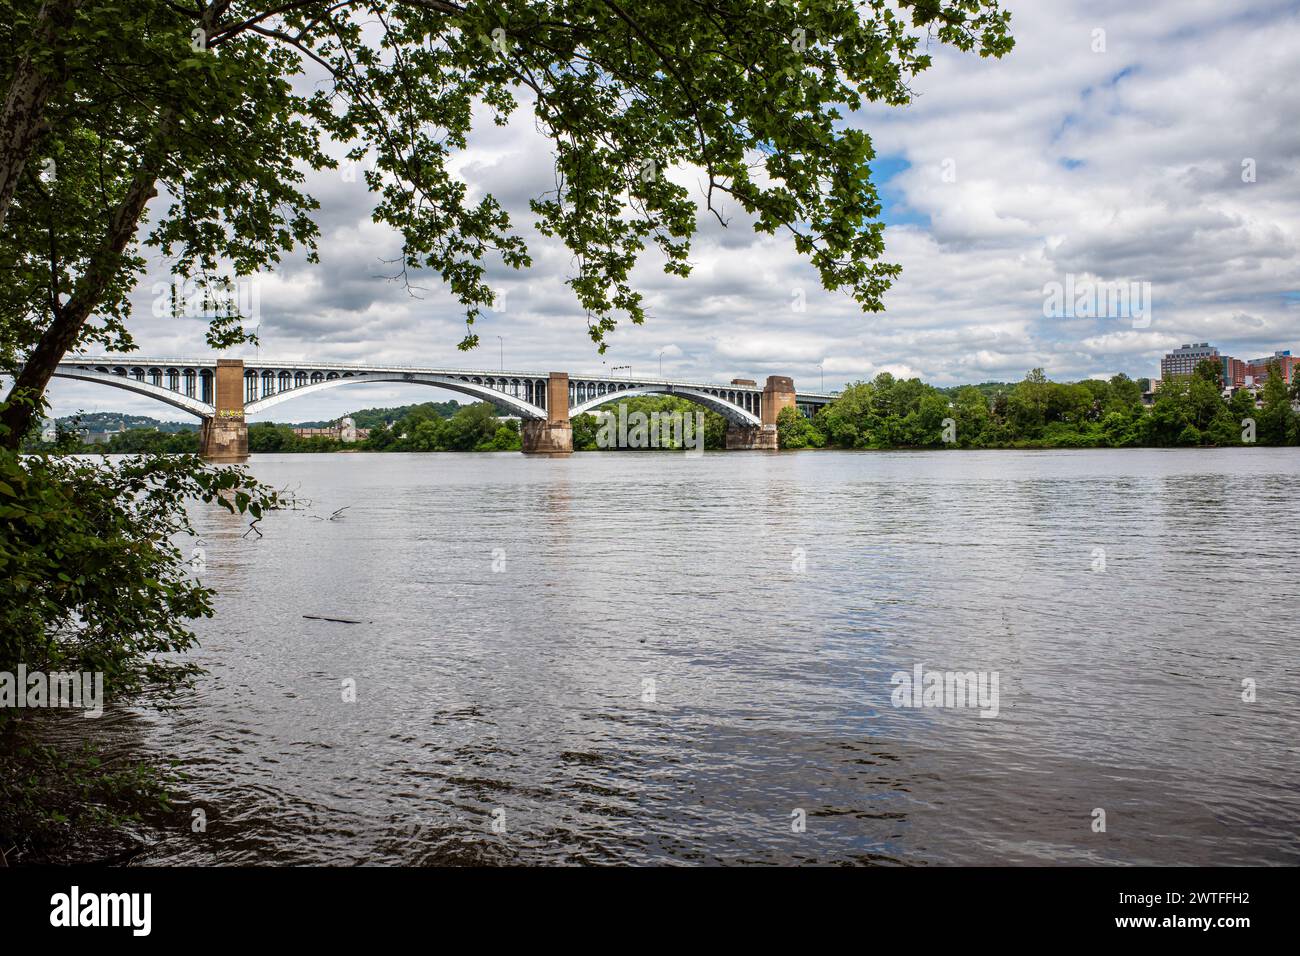 Die malerische 40th St Bridge überquert den Allegheny River in Pittsburgh, umgeben von leuchtenden grünen Bäumen. Stockfoto